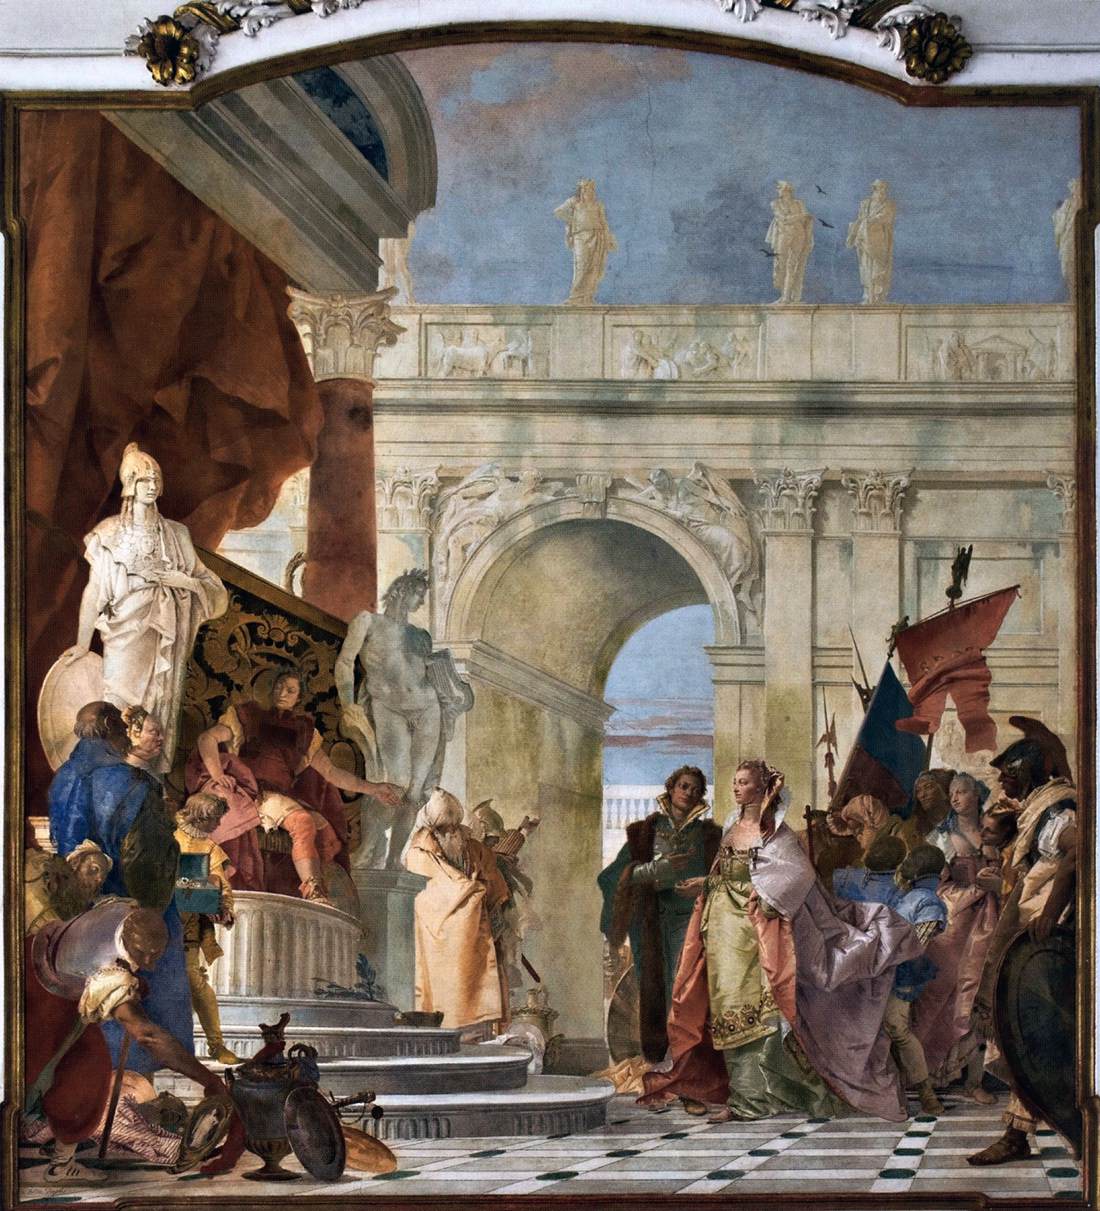 Tiepolo. 1743. The Magnanimity of Scipio Fresco. Villa Cordellina. Montecchio Maggiore